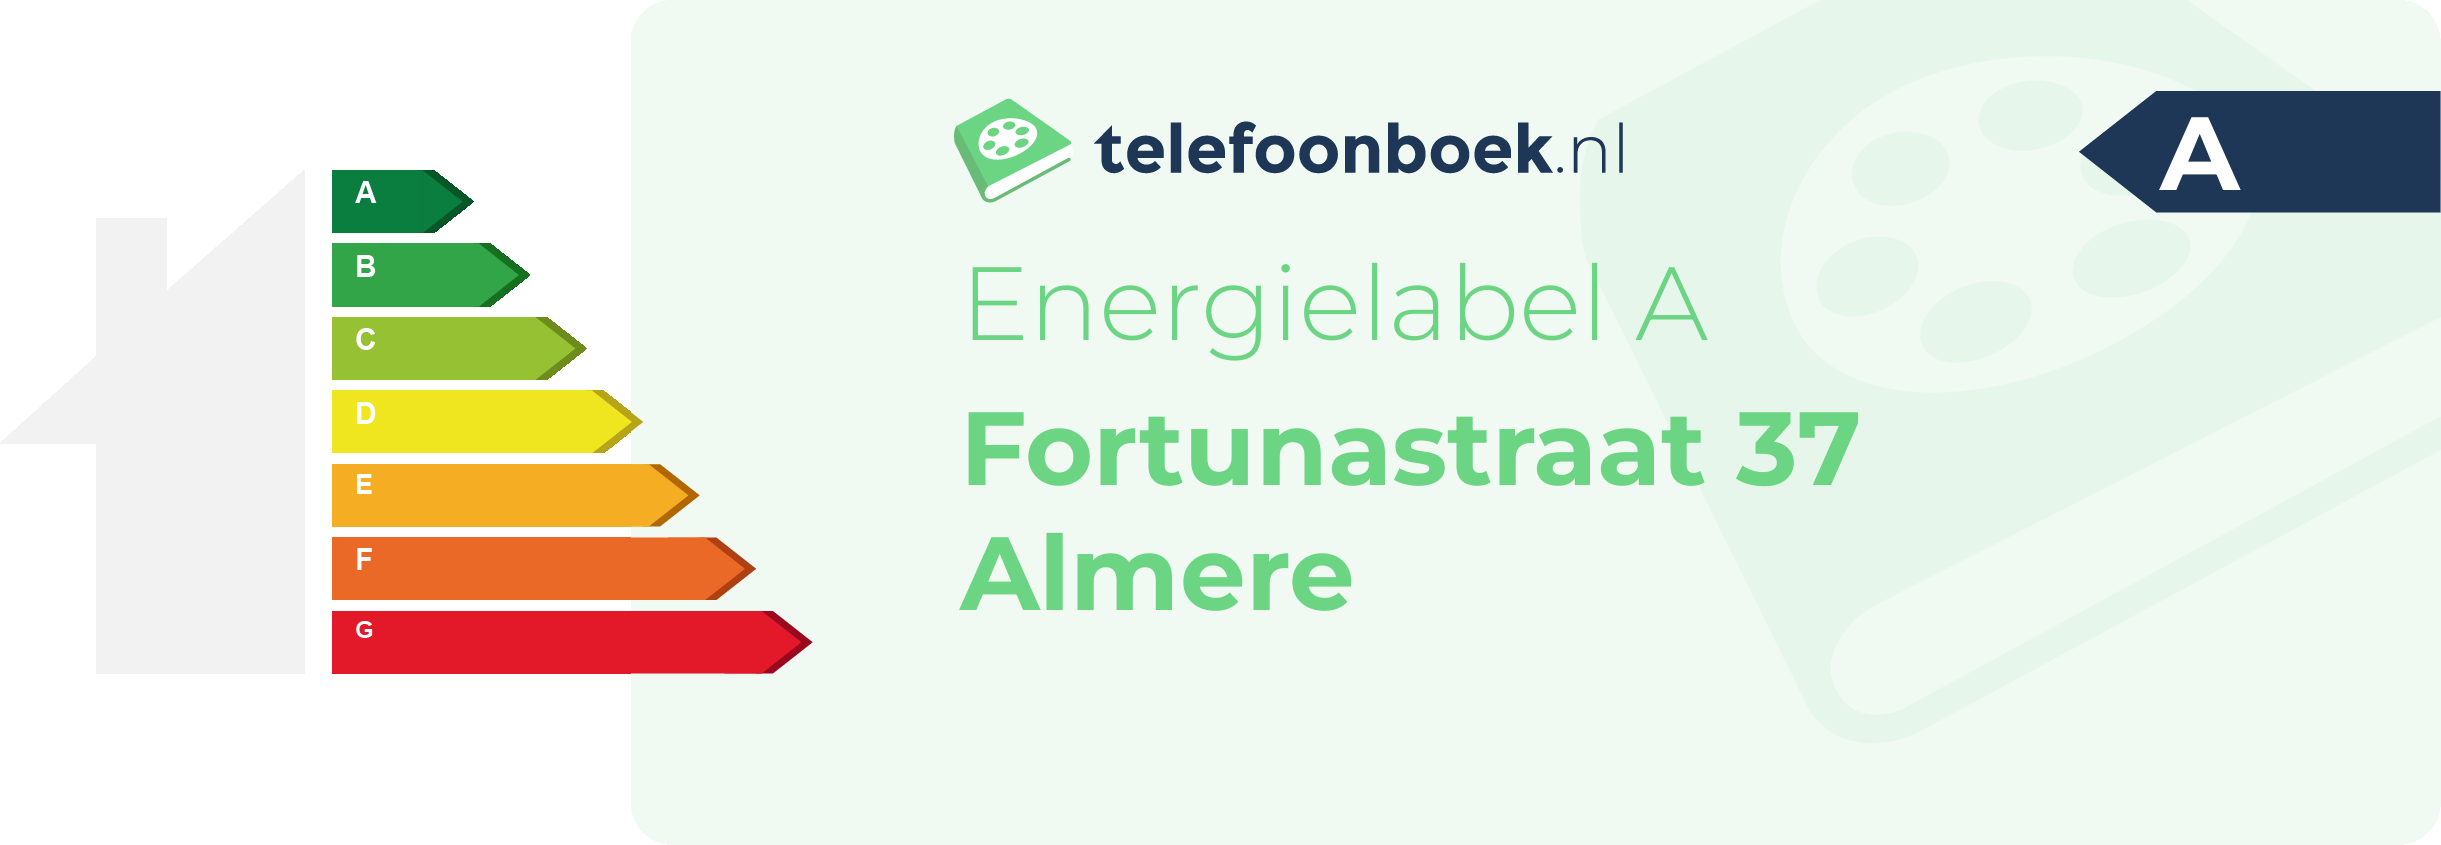 Energielabel Fortunastraat 37 Almere